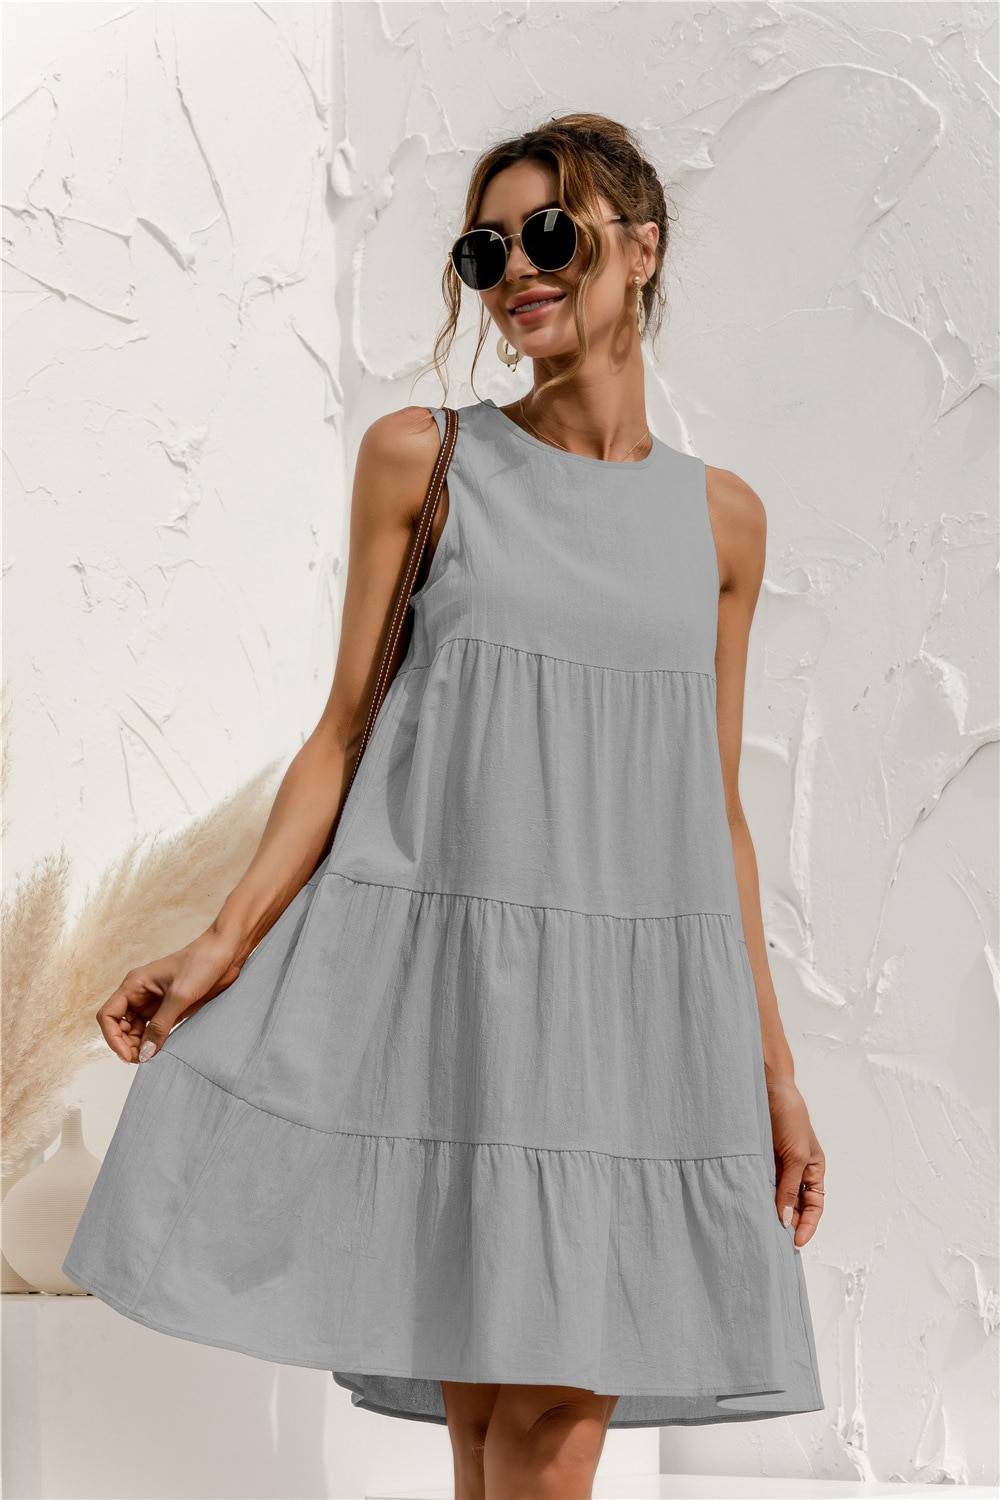 Summer Sleeveless Dress - All Dresses - Dresses - 15 - 2024